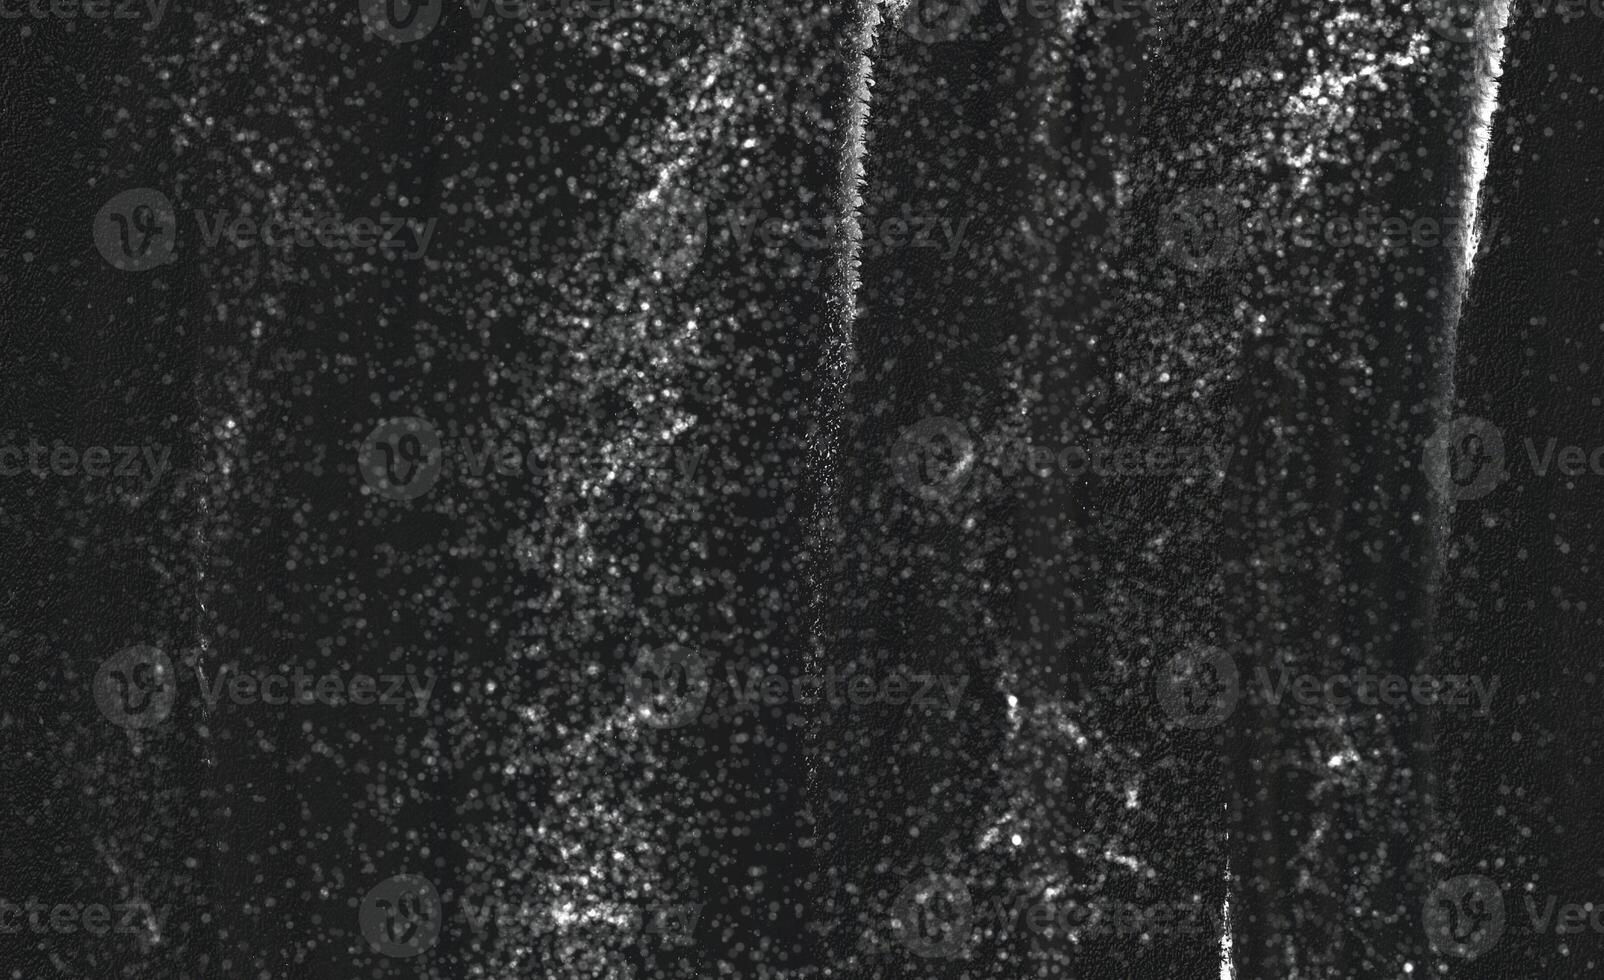 Scratch Grunge Urban Background.Grunge Black and White Distress Texture photo